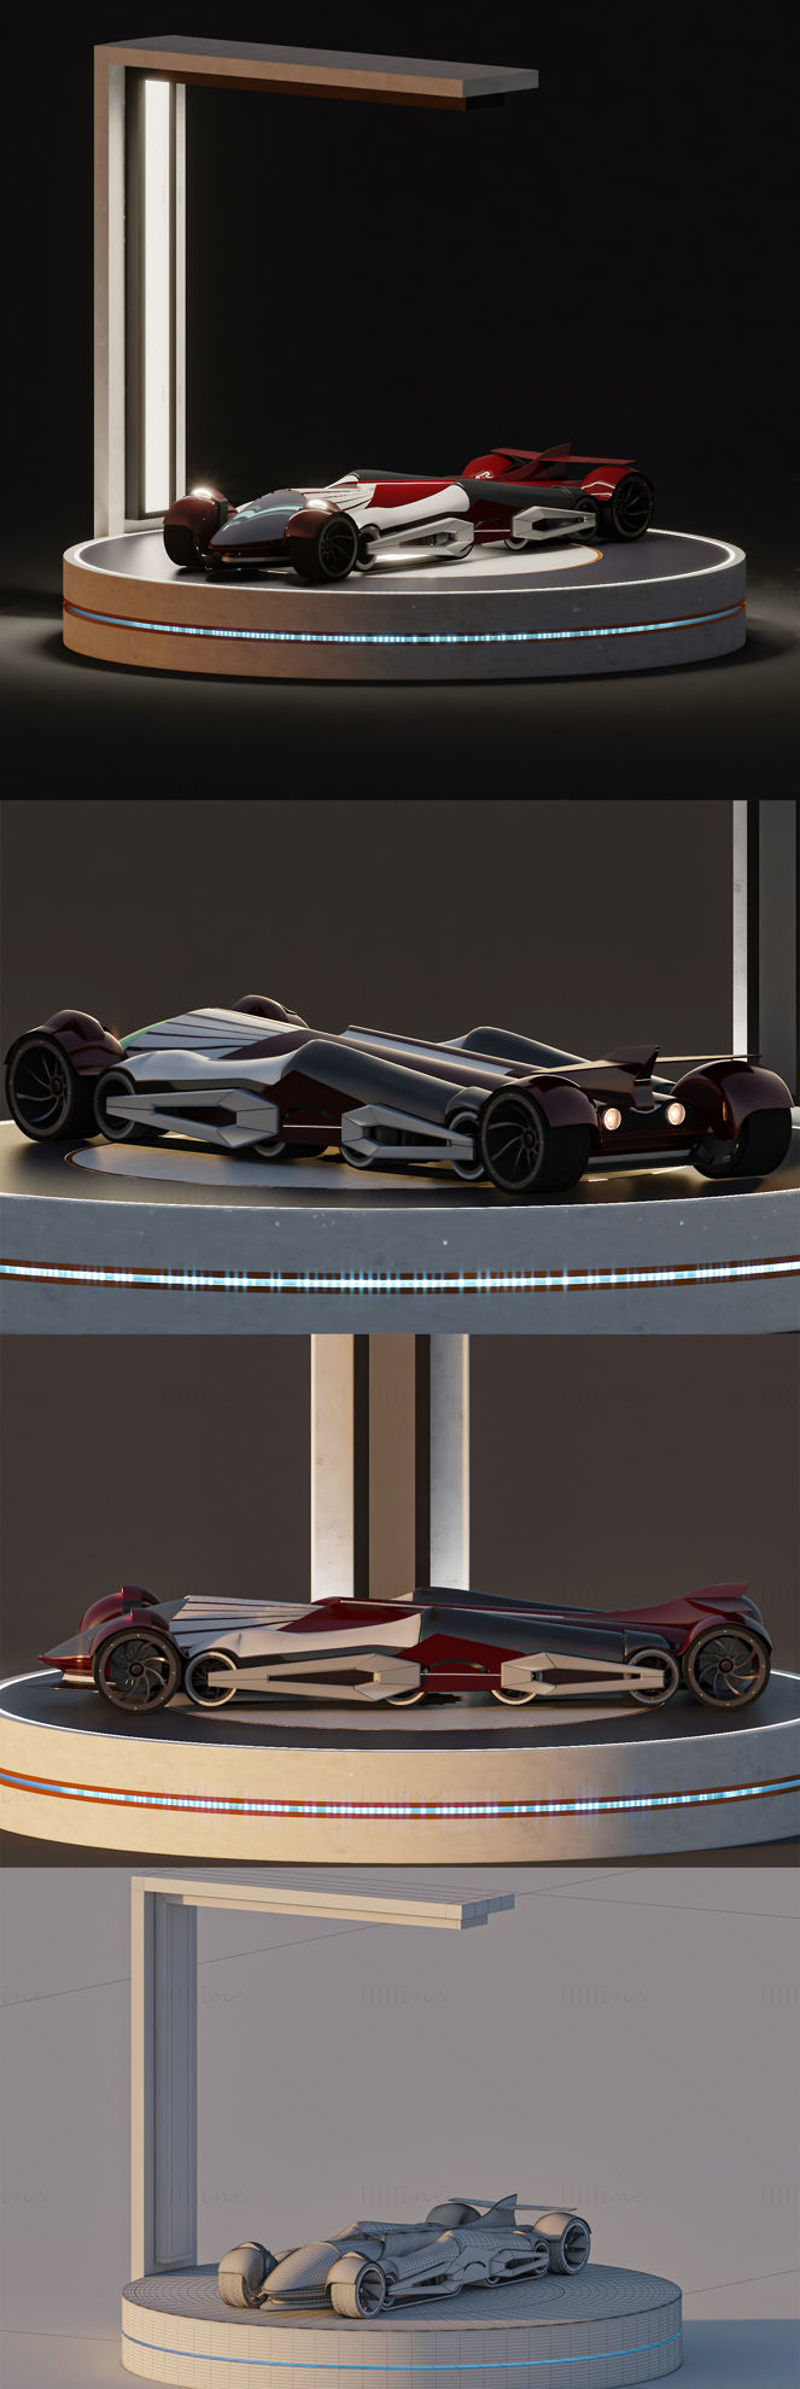 概念跑车+展台3D模型场景